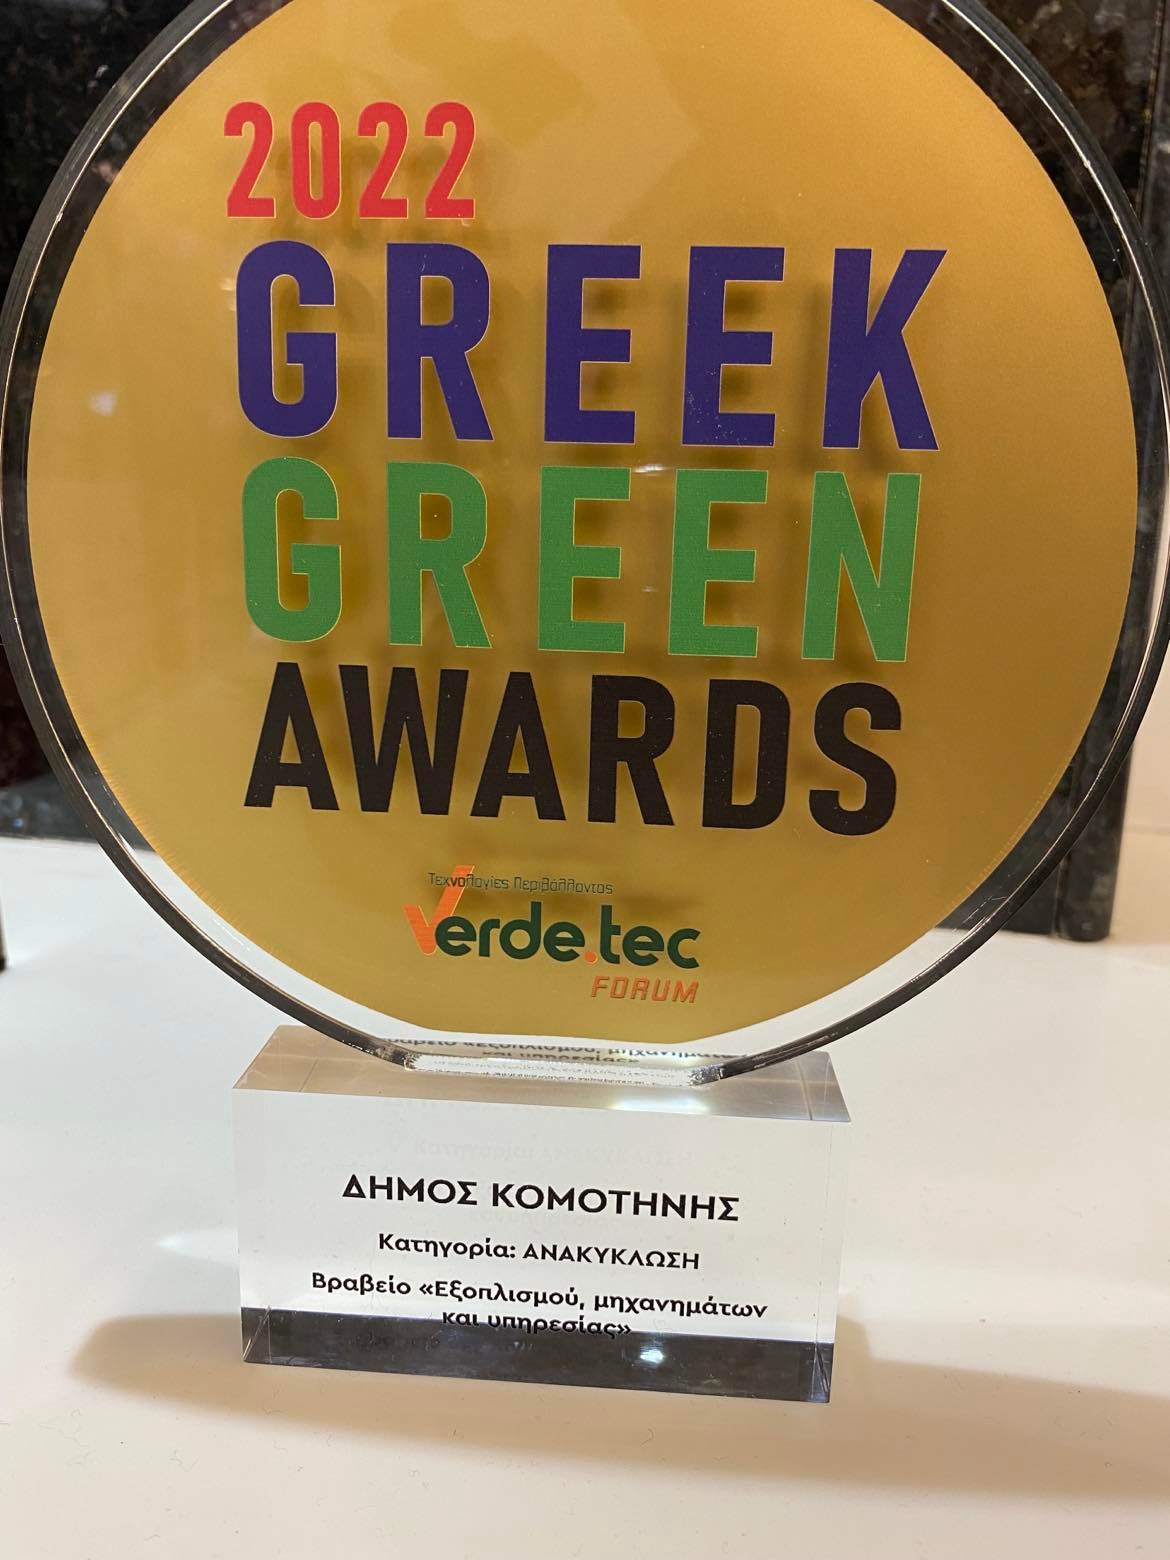 Βραβείο του Δήμου Κομοτηνής στα Greek Green Awards